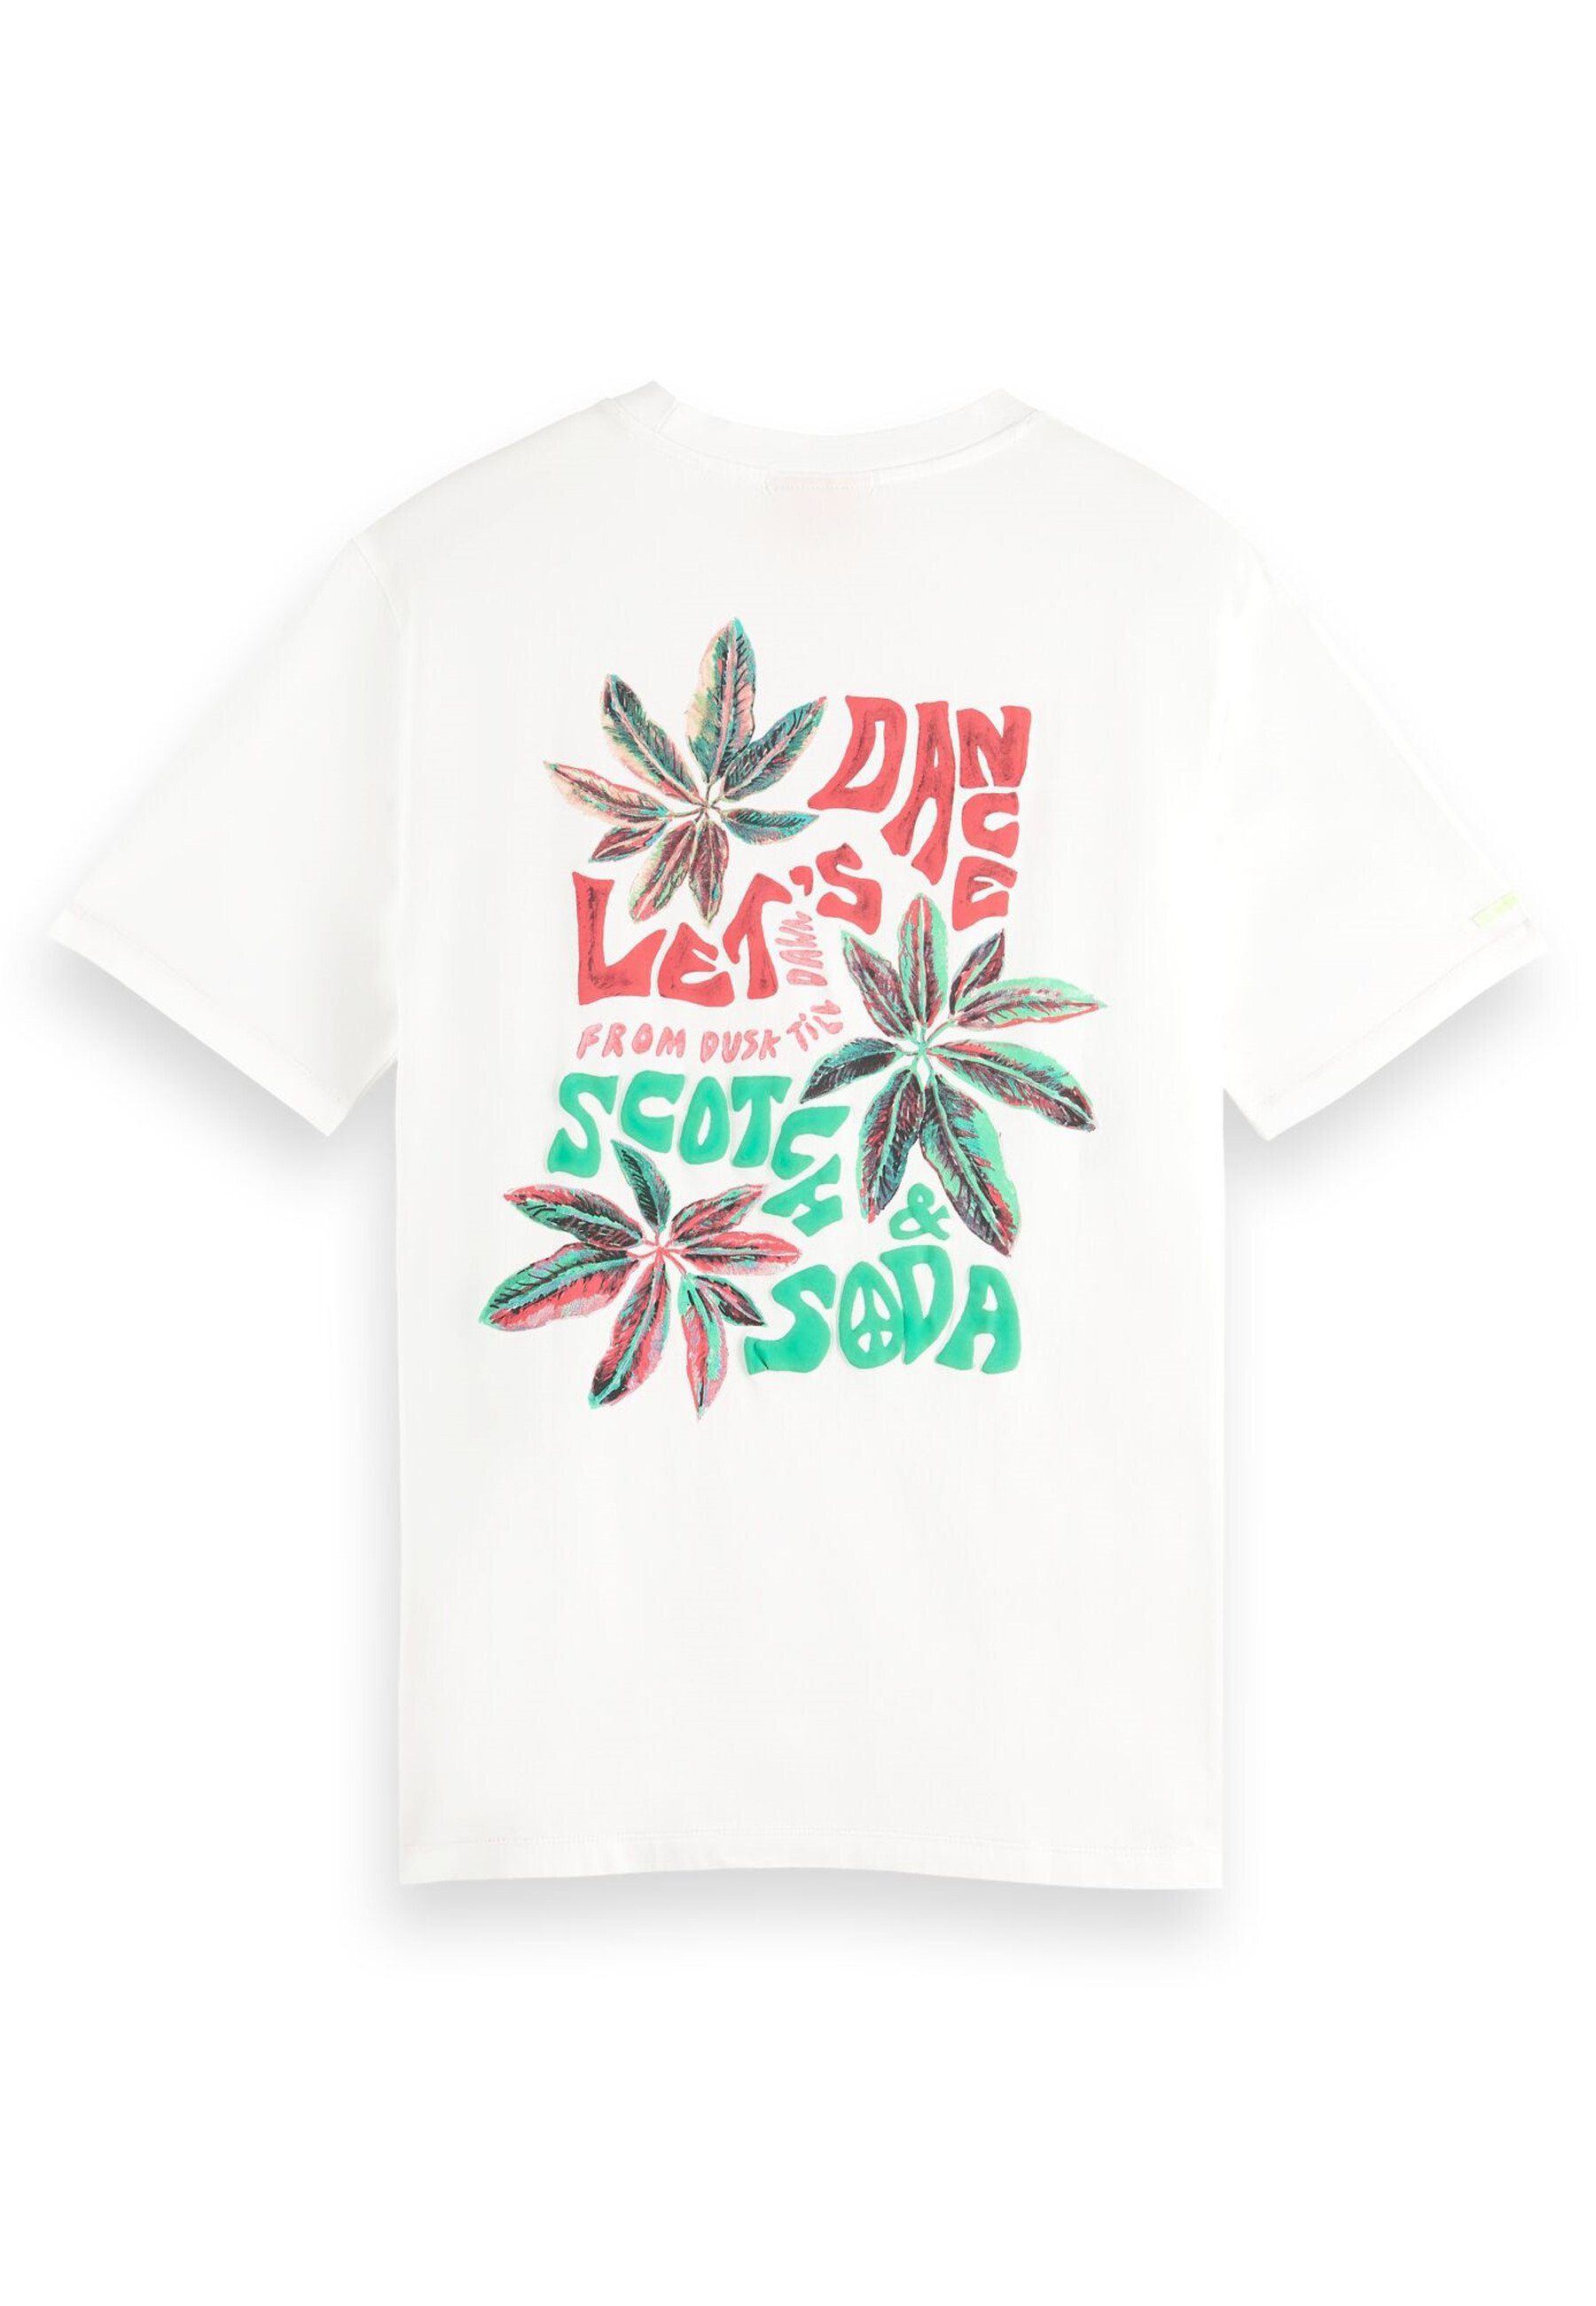 Scotch & (1-tlg) Rundhalsausschnitt weiss Shirt Kurzarmshirt Festival T-Shirt mit Soda